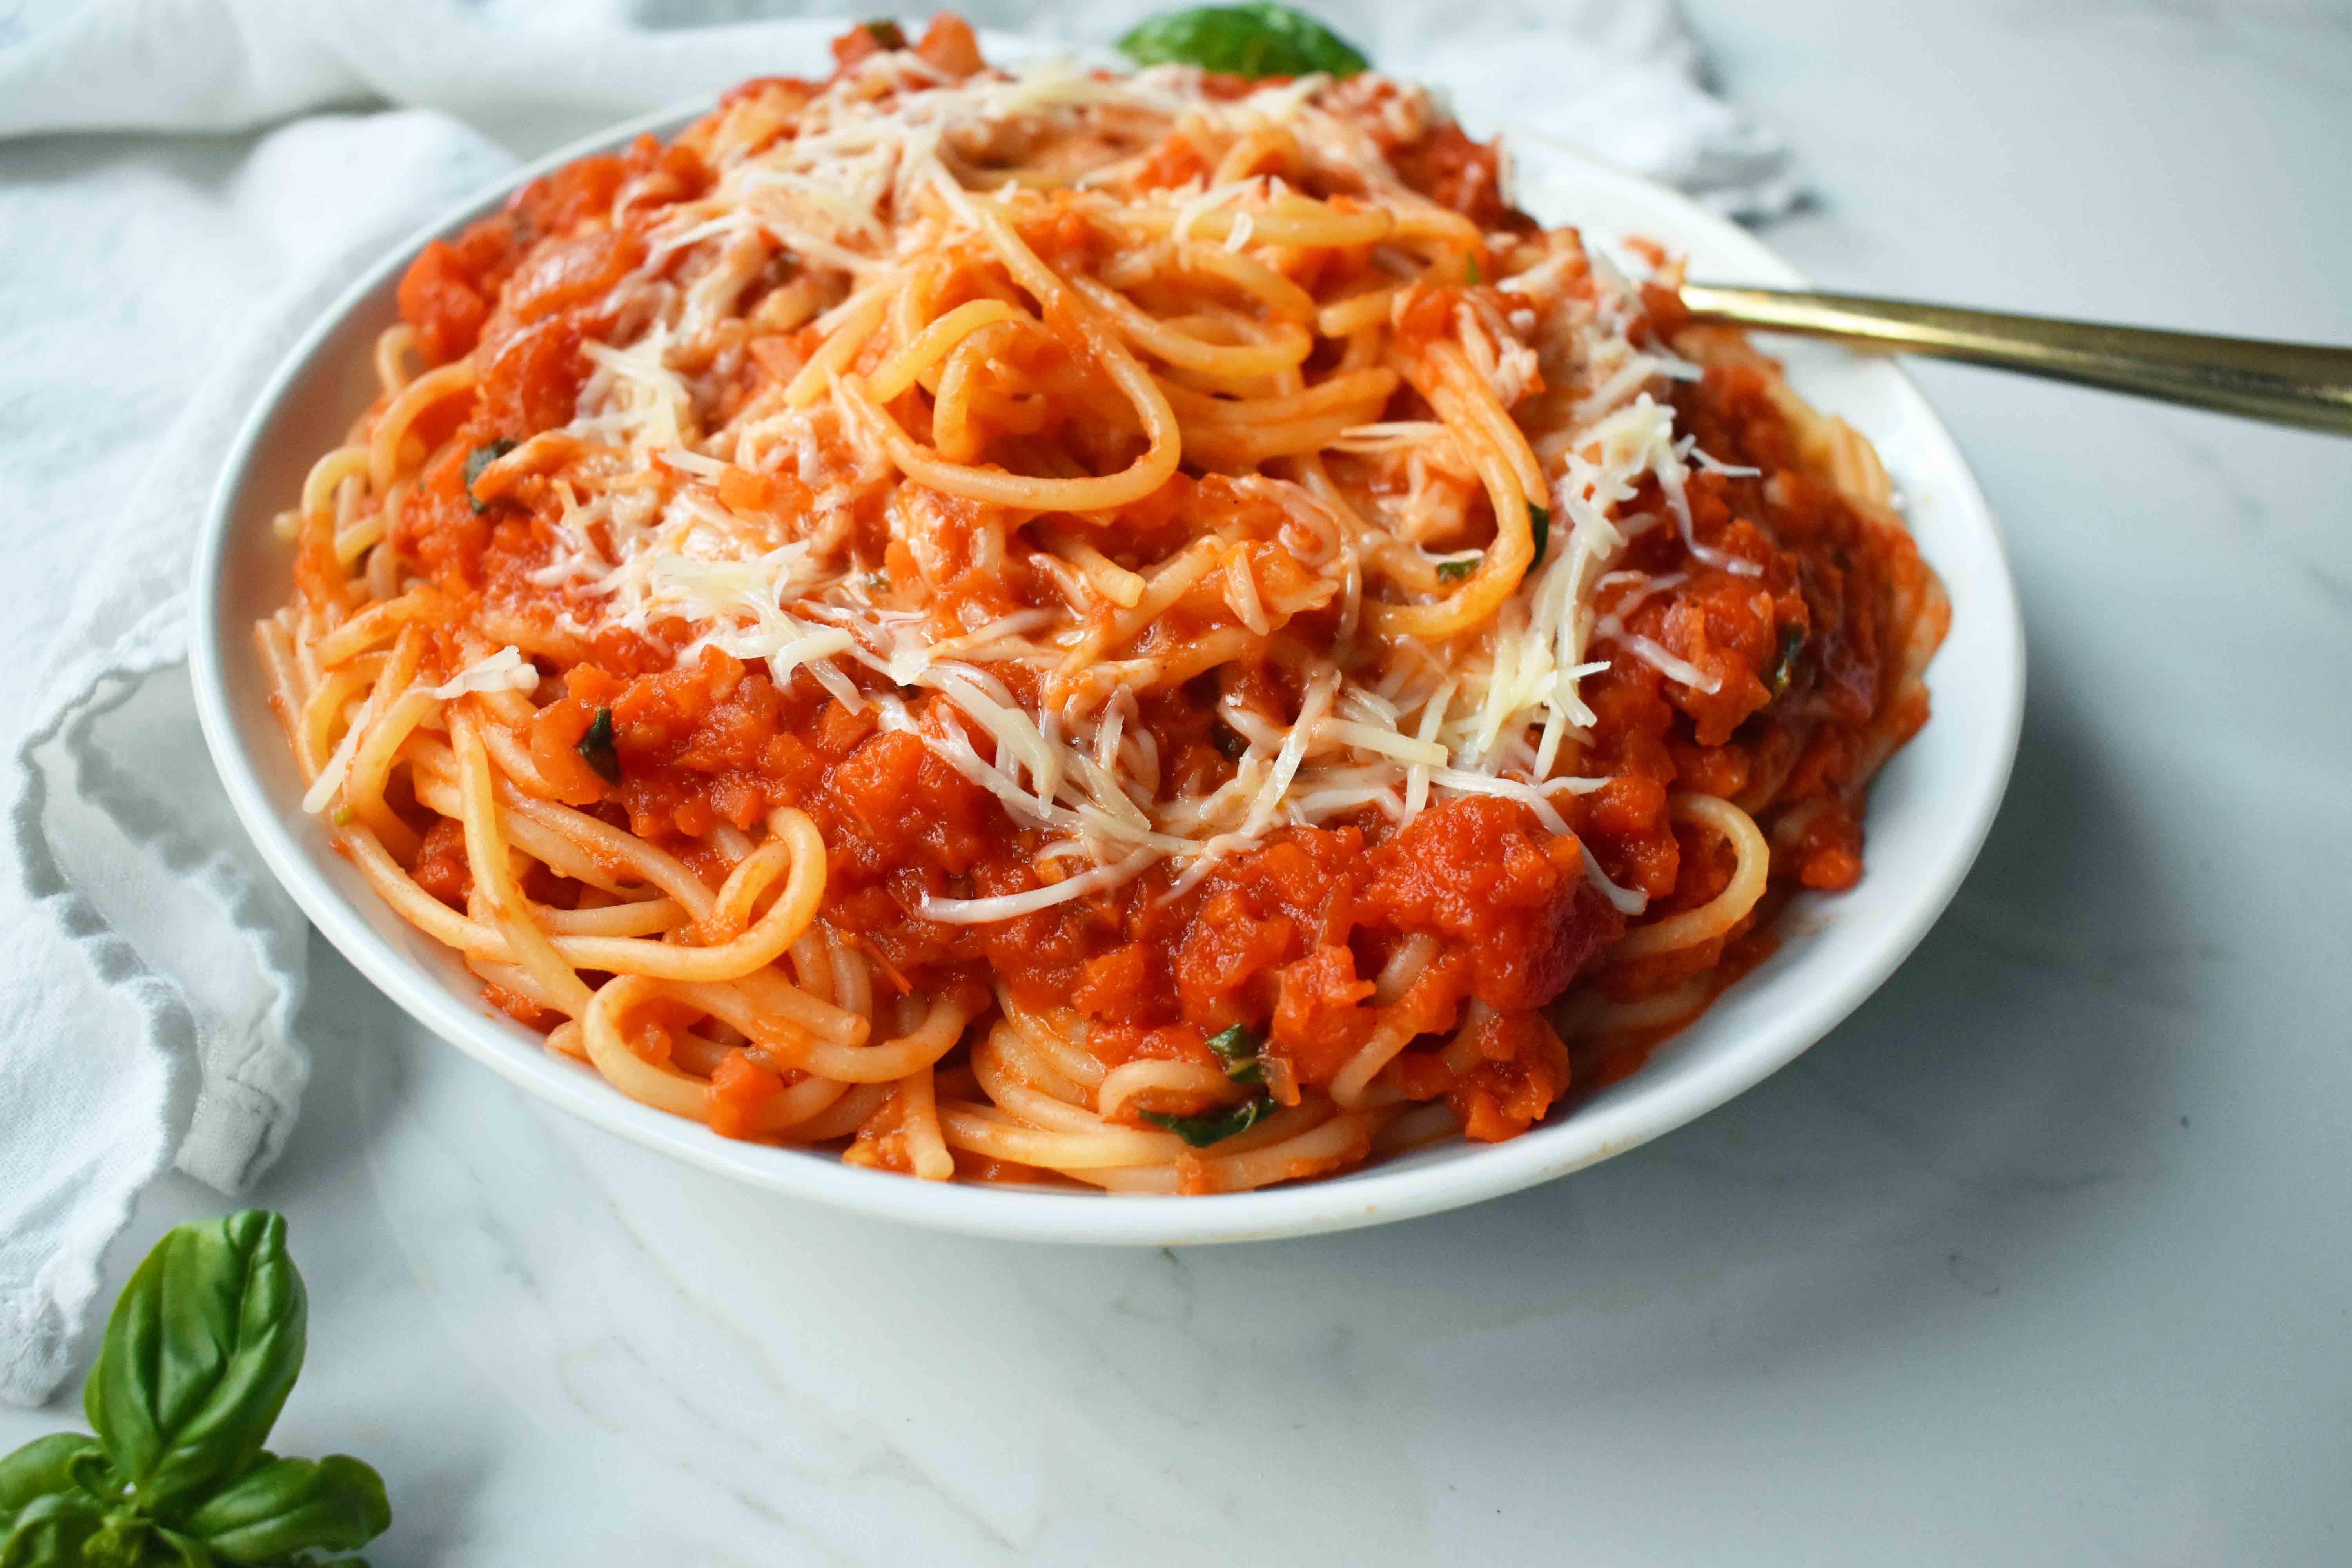 Homemade Marinara Spaghetti Sauce. How to make the best authentic marinara sauce. Spaghetti with marinara sauce. An easy spaghetti sauce made from scratch. www.modernhoney.com